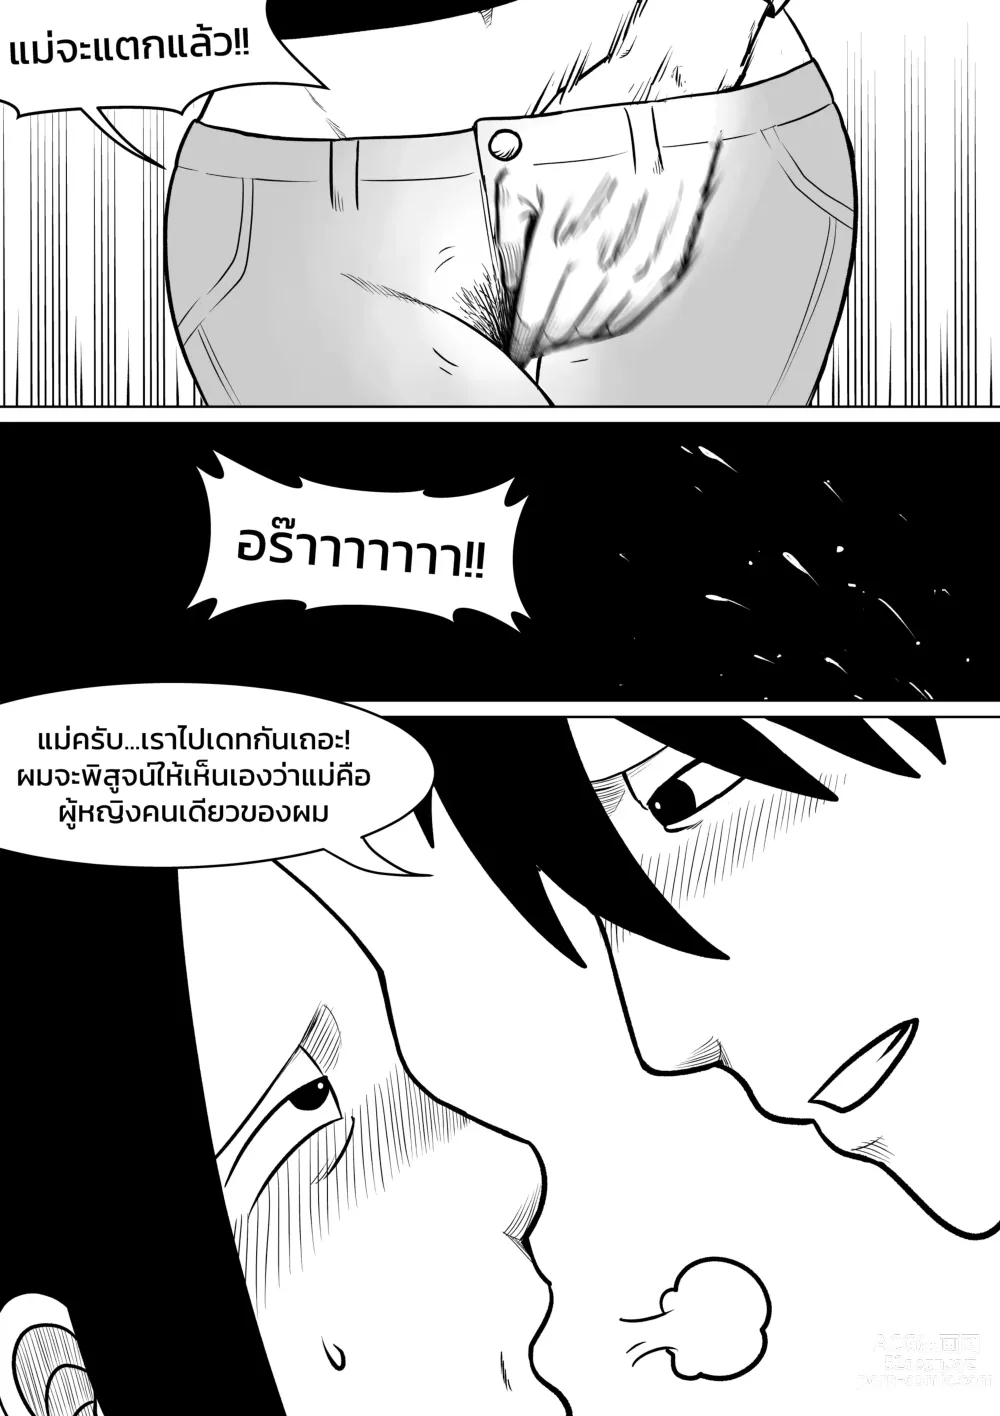 Page 8 of doujinshi ผมตกหลุมรักแม่ตัวเอง ตอนที่ 3